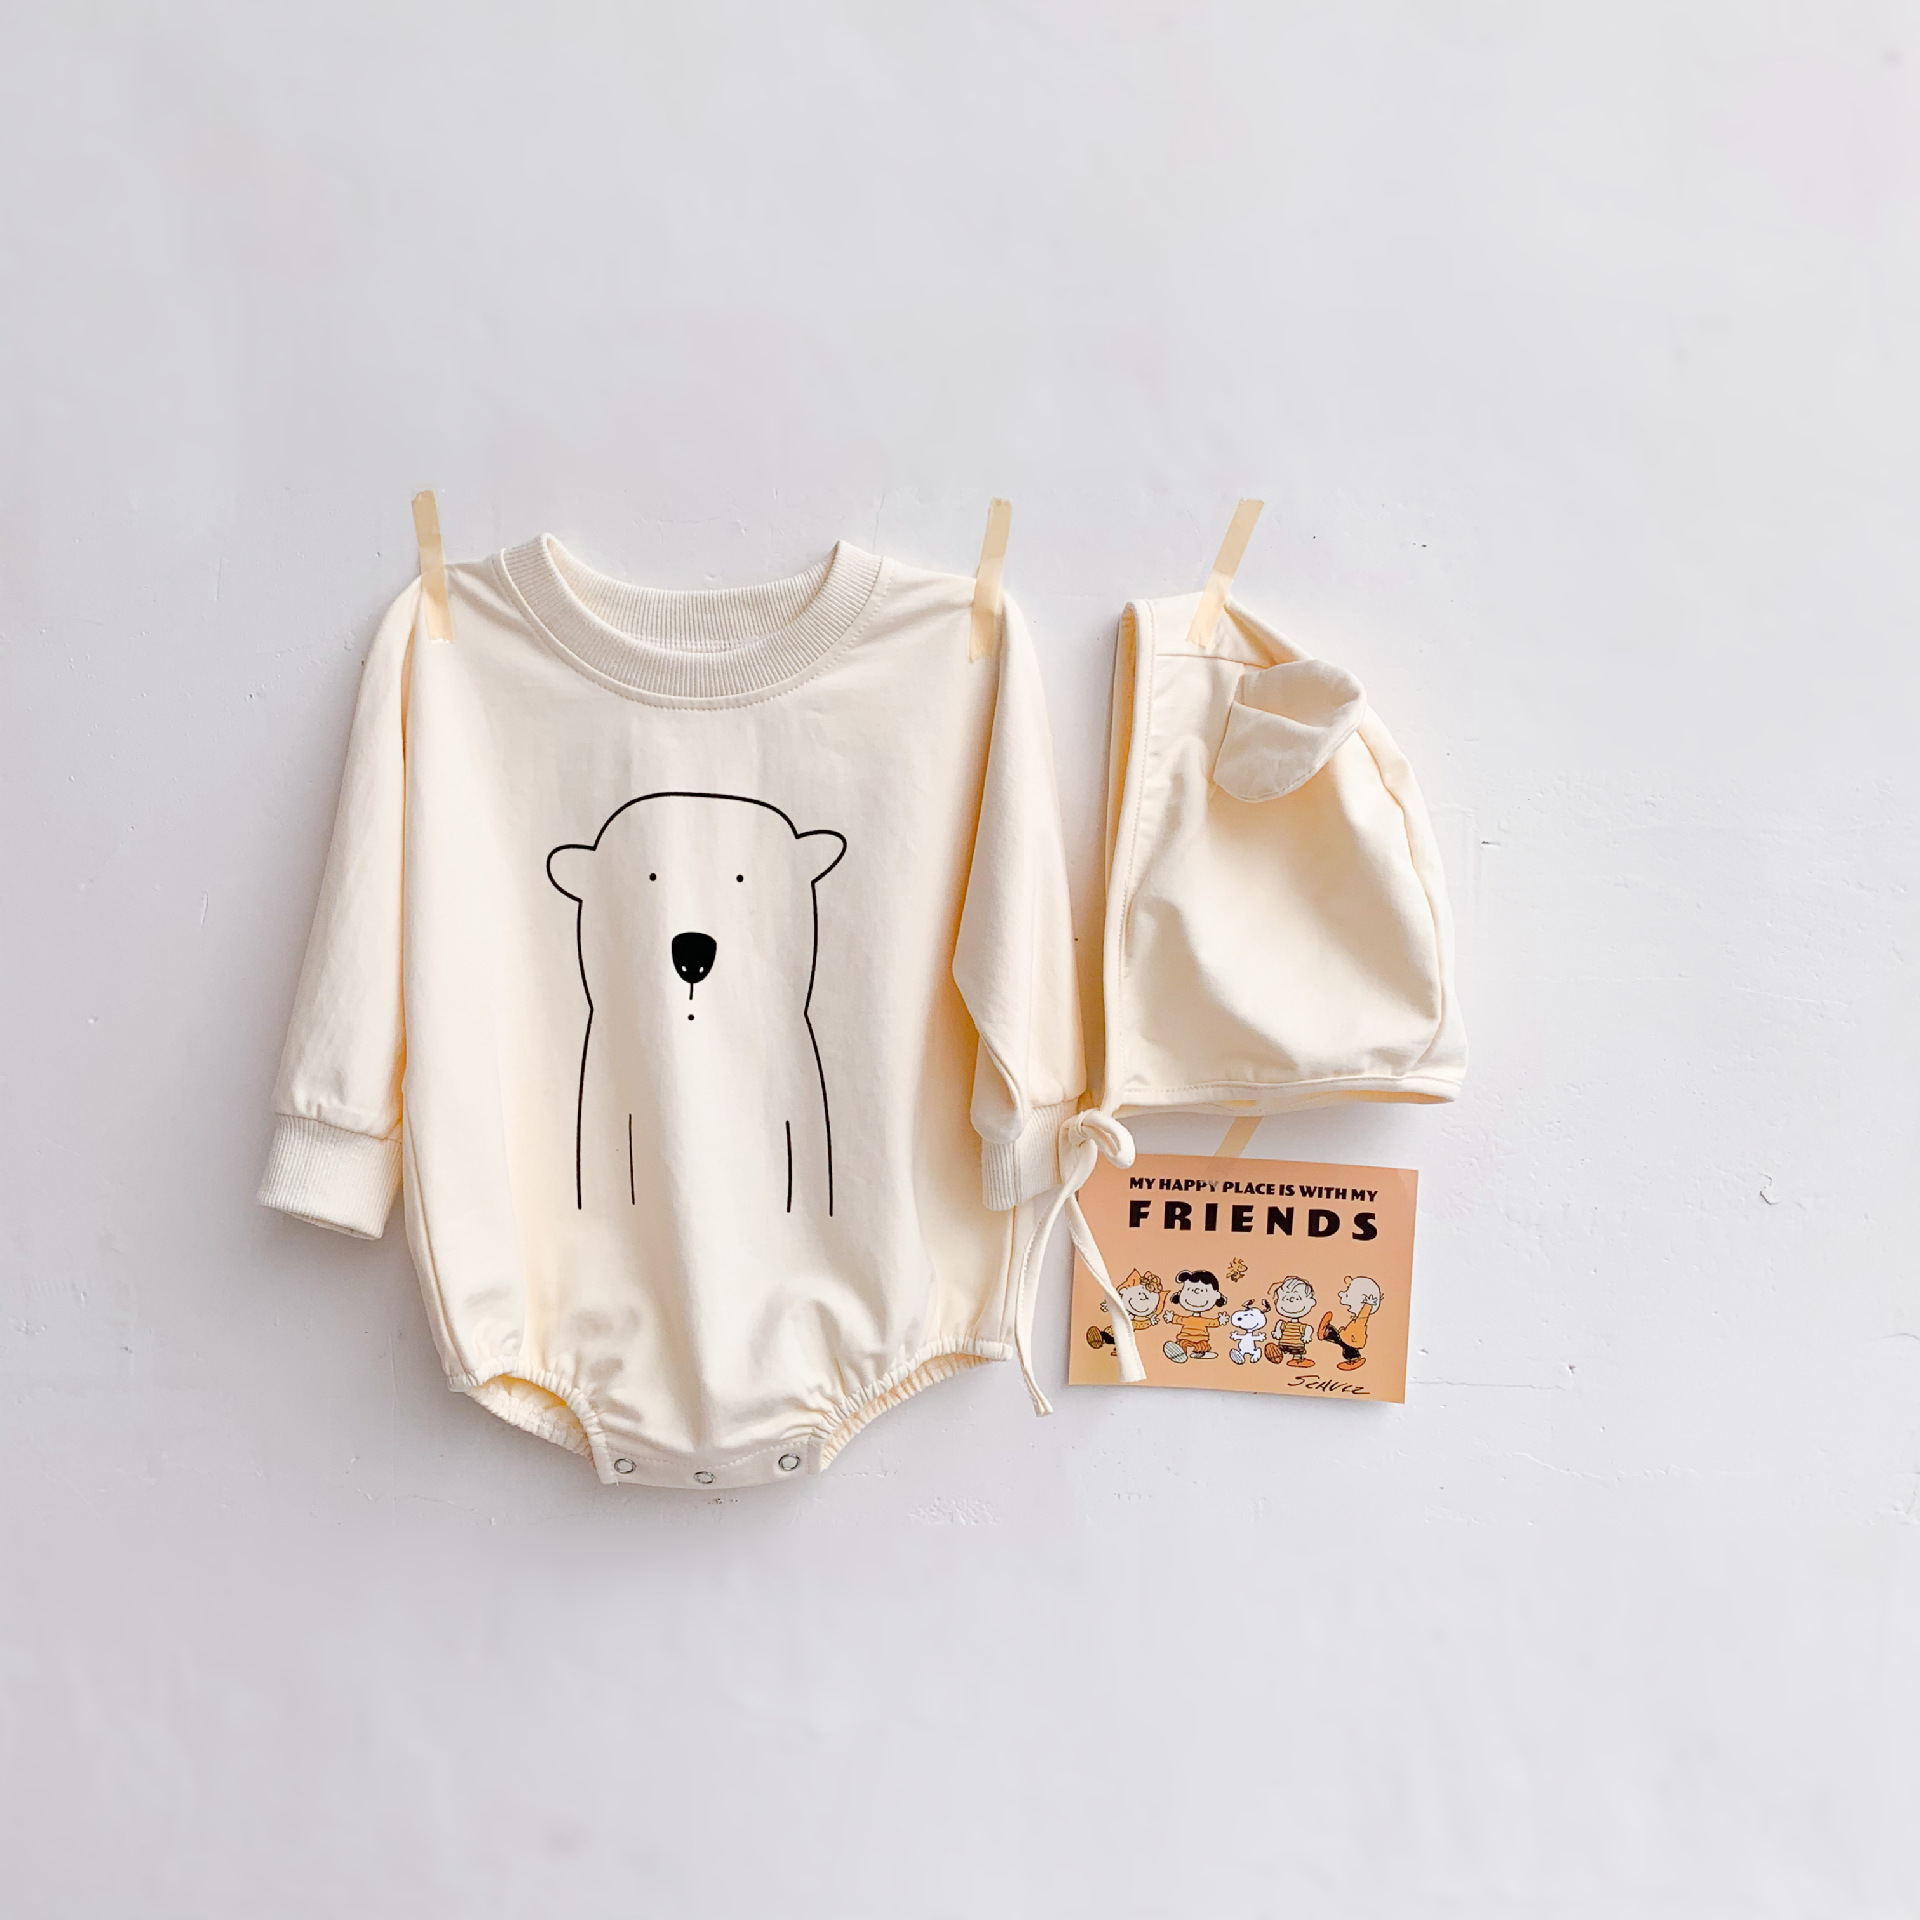 Bộ đồ 2 món gồm áo liền quần tay dài in hình chú gấu + nón xinh xắn dành cho bé gái sơ sinh